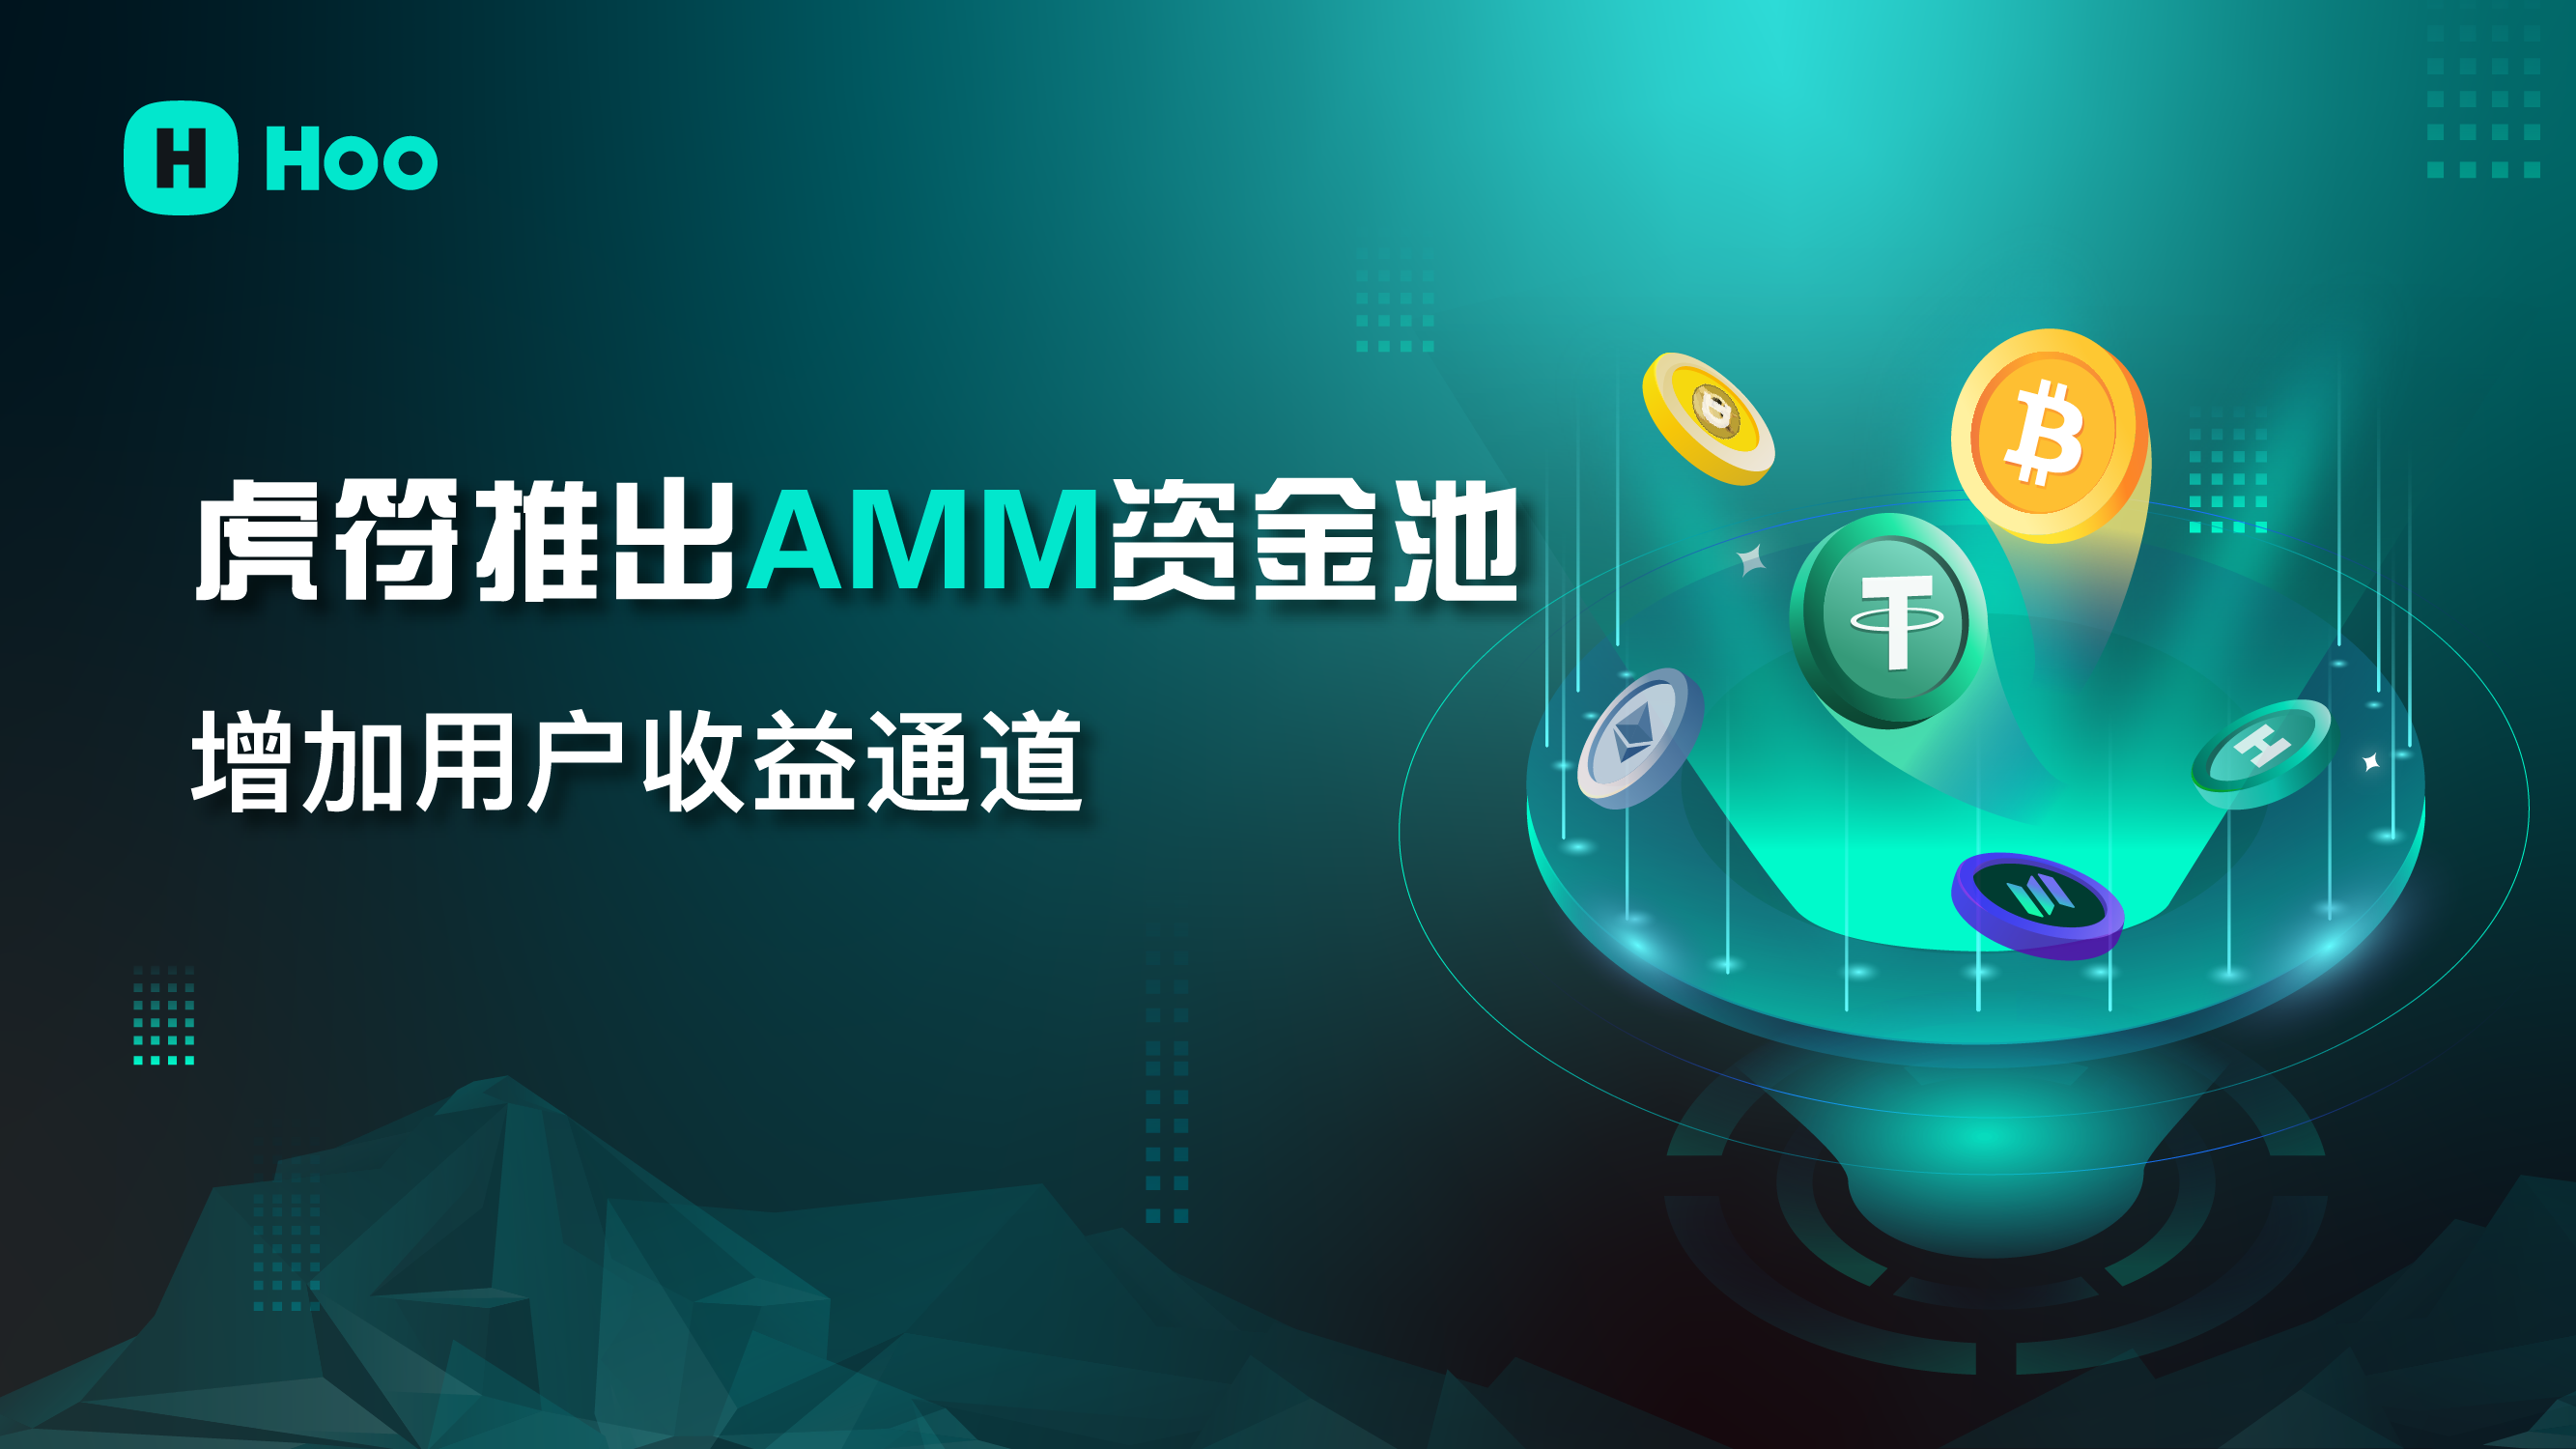 虎符推出AMM流动性资金池 支持现货专区做市赚收益